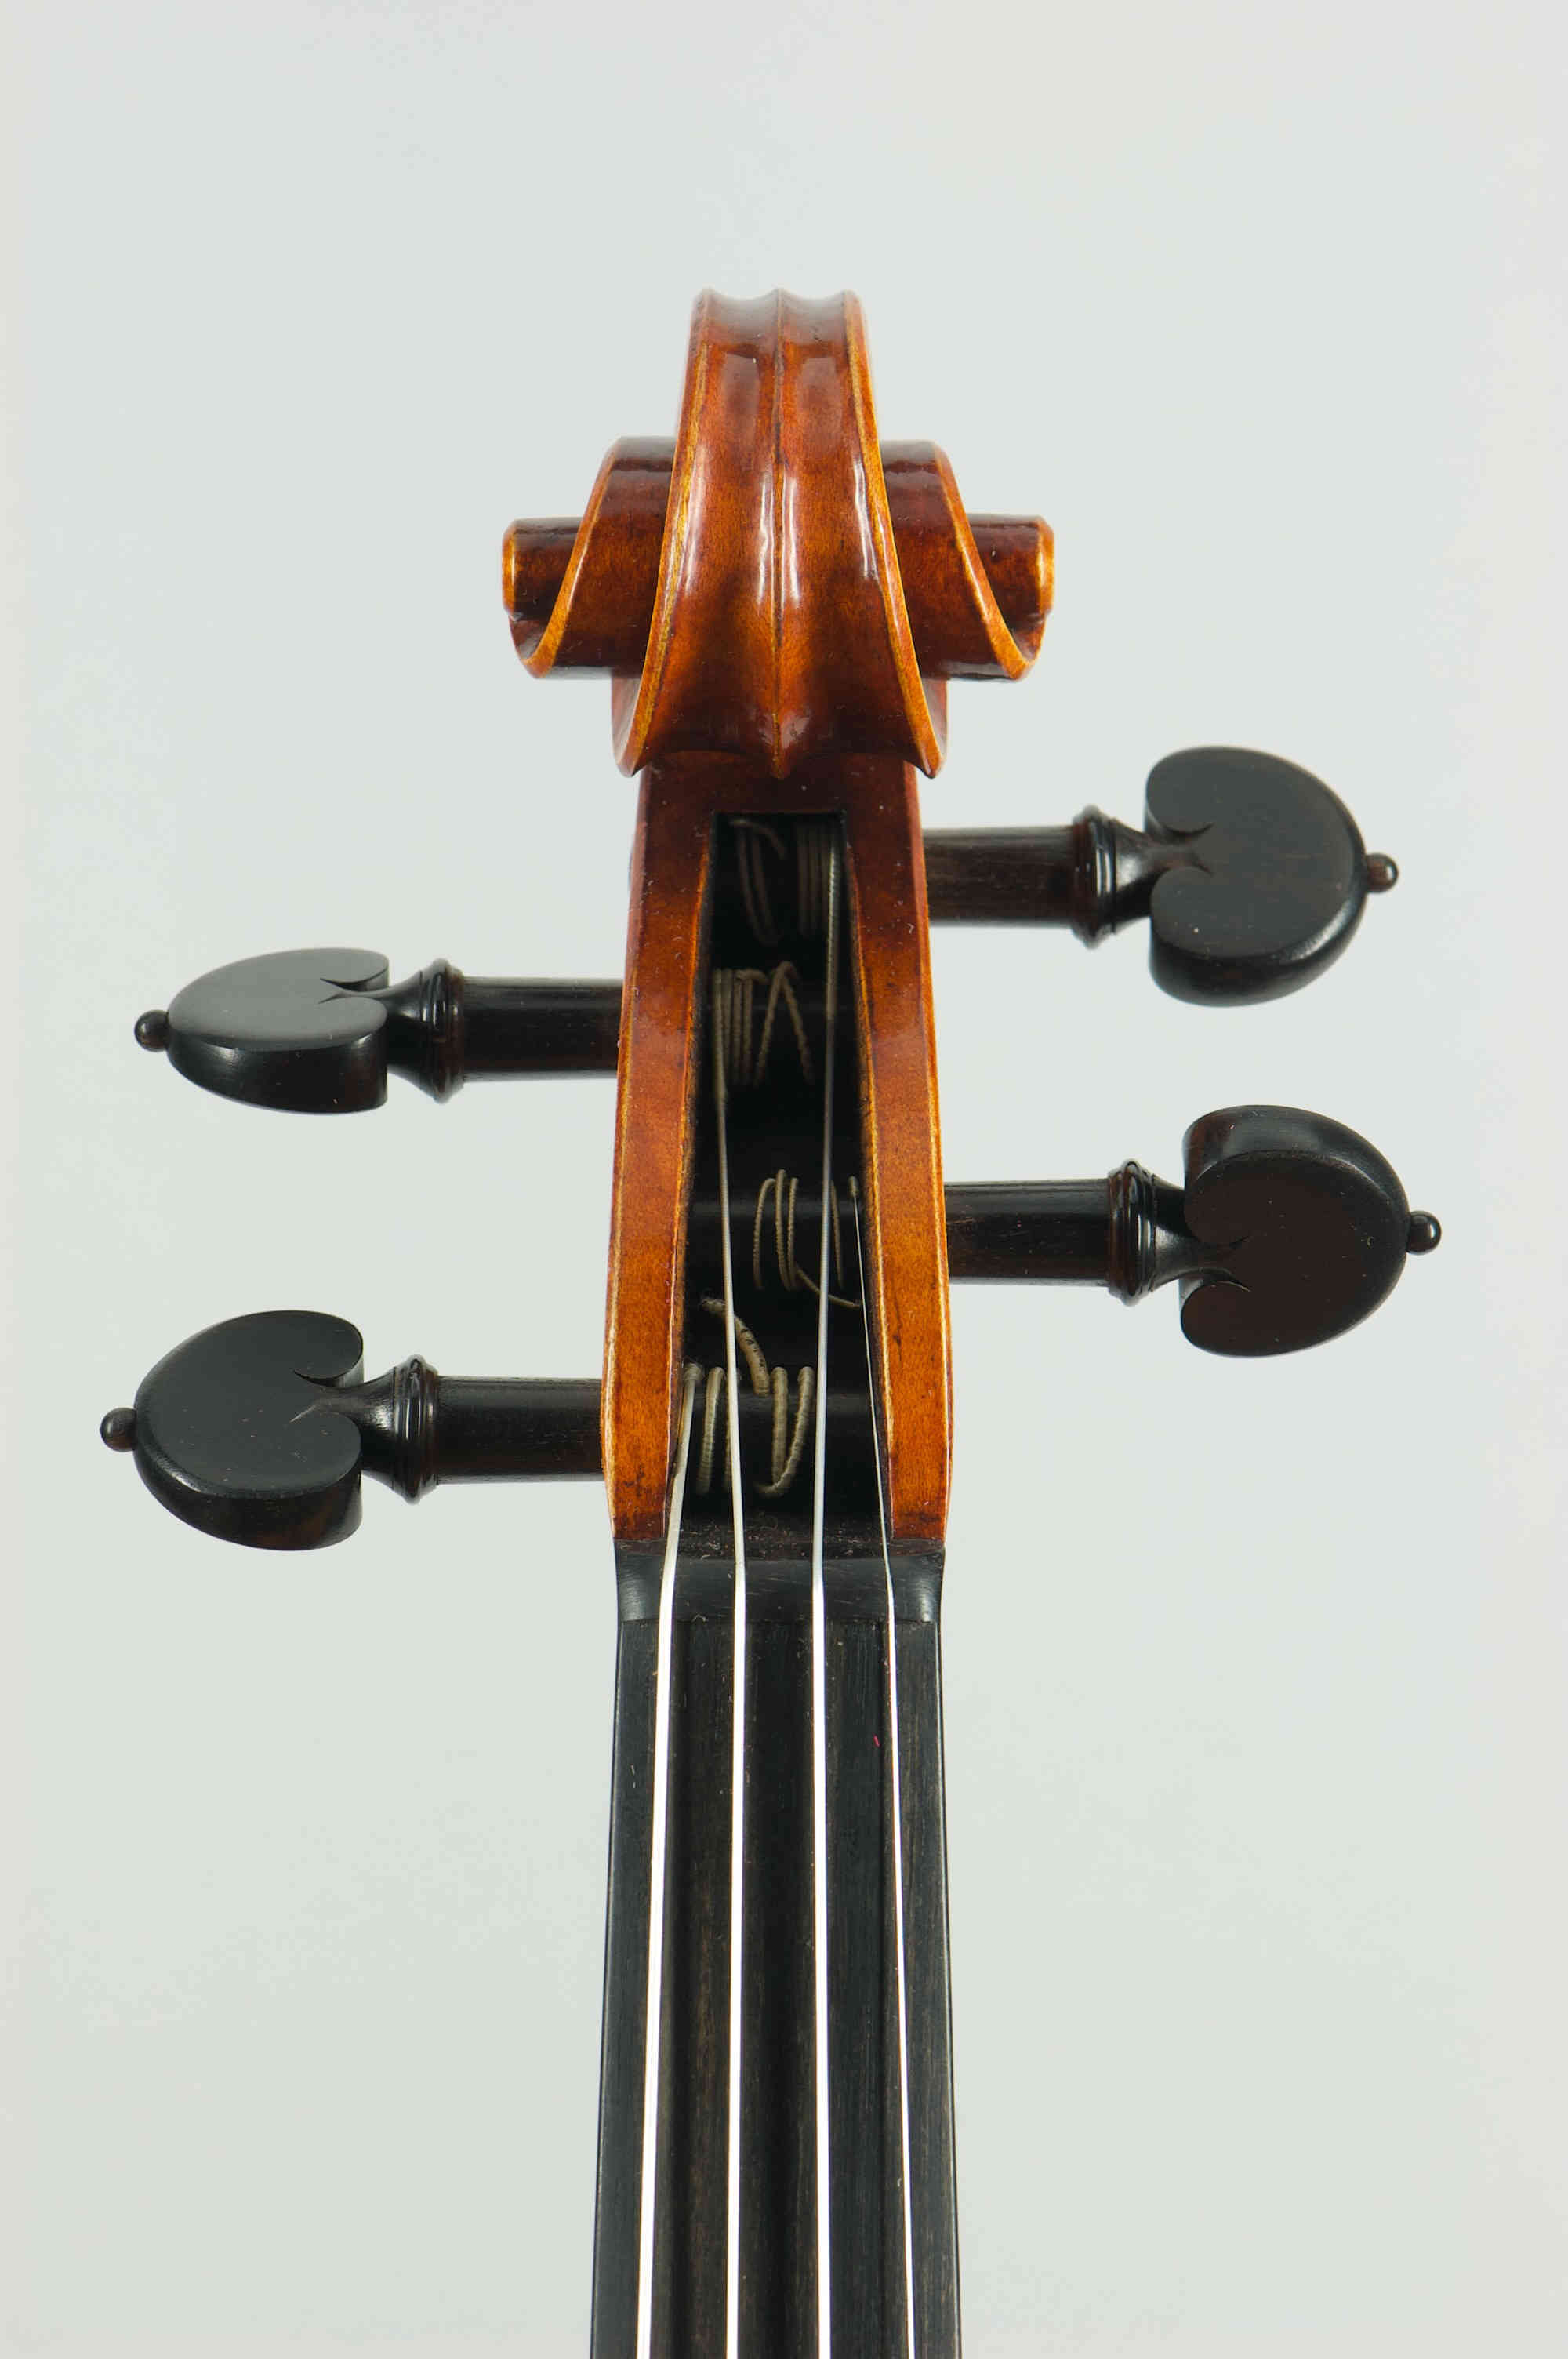 Antonio Stradivari 'Messiah' 1716